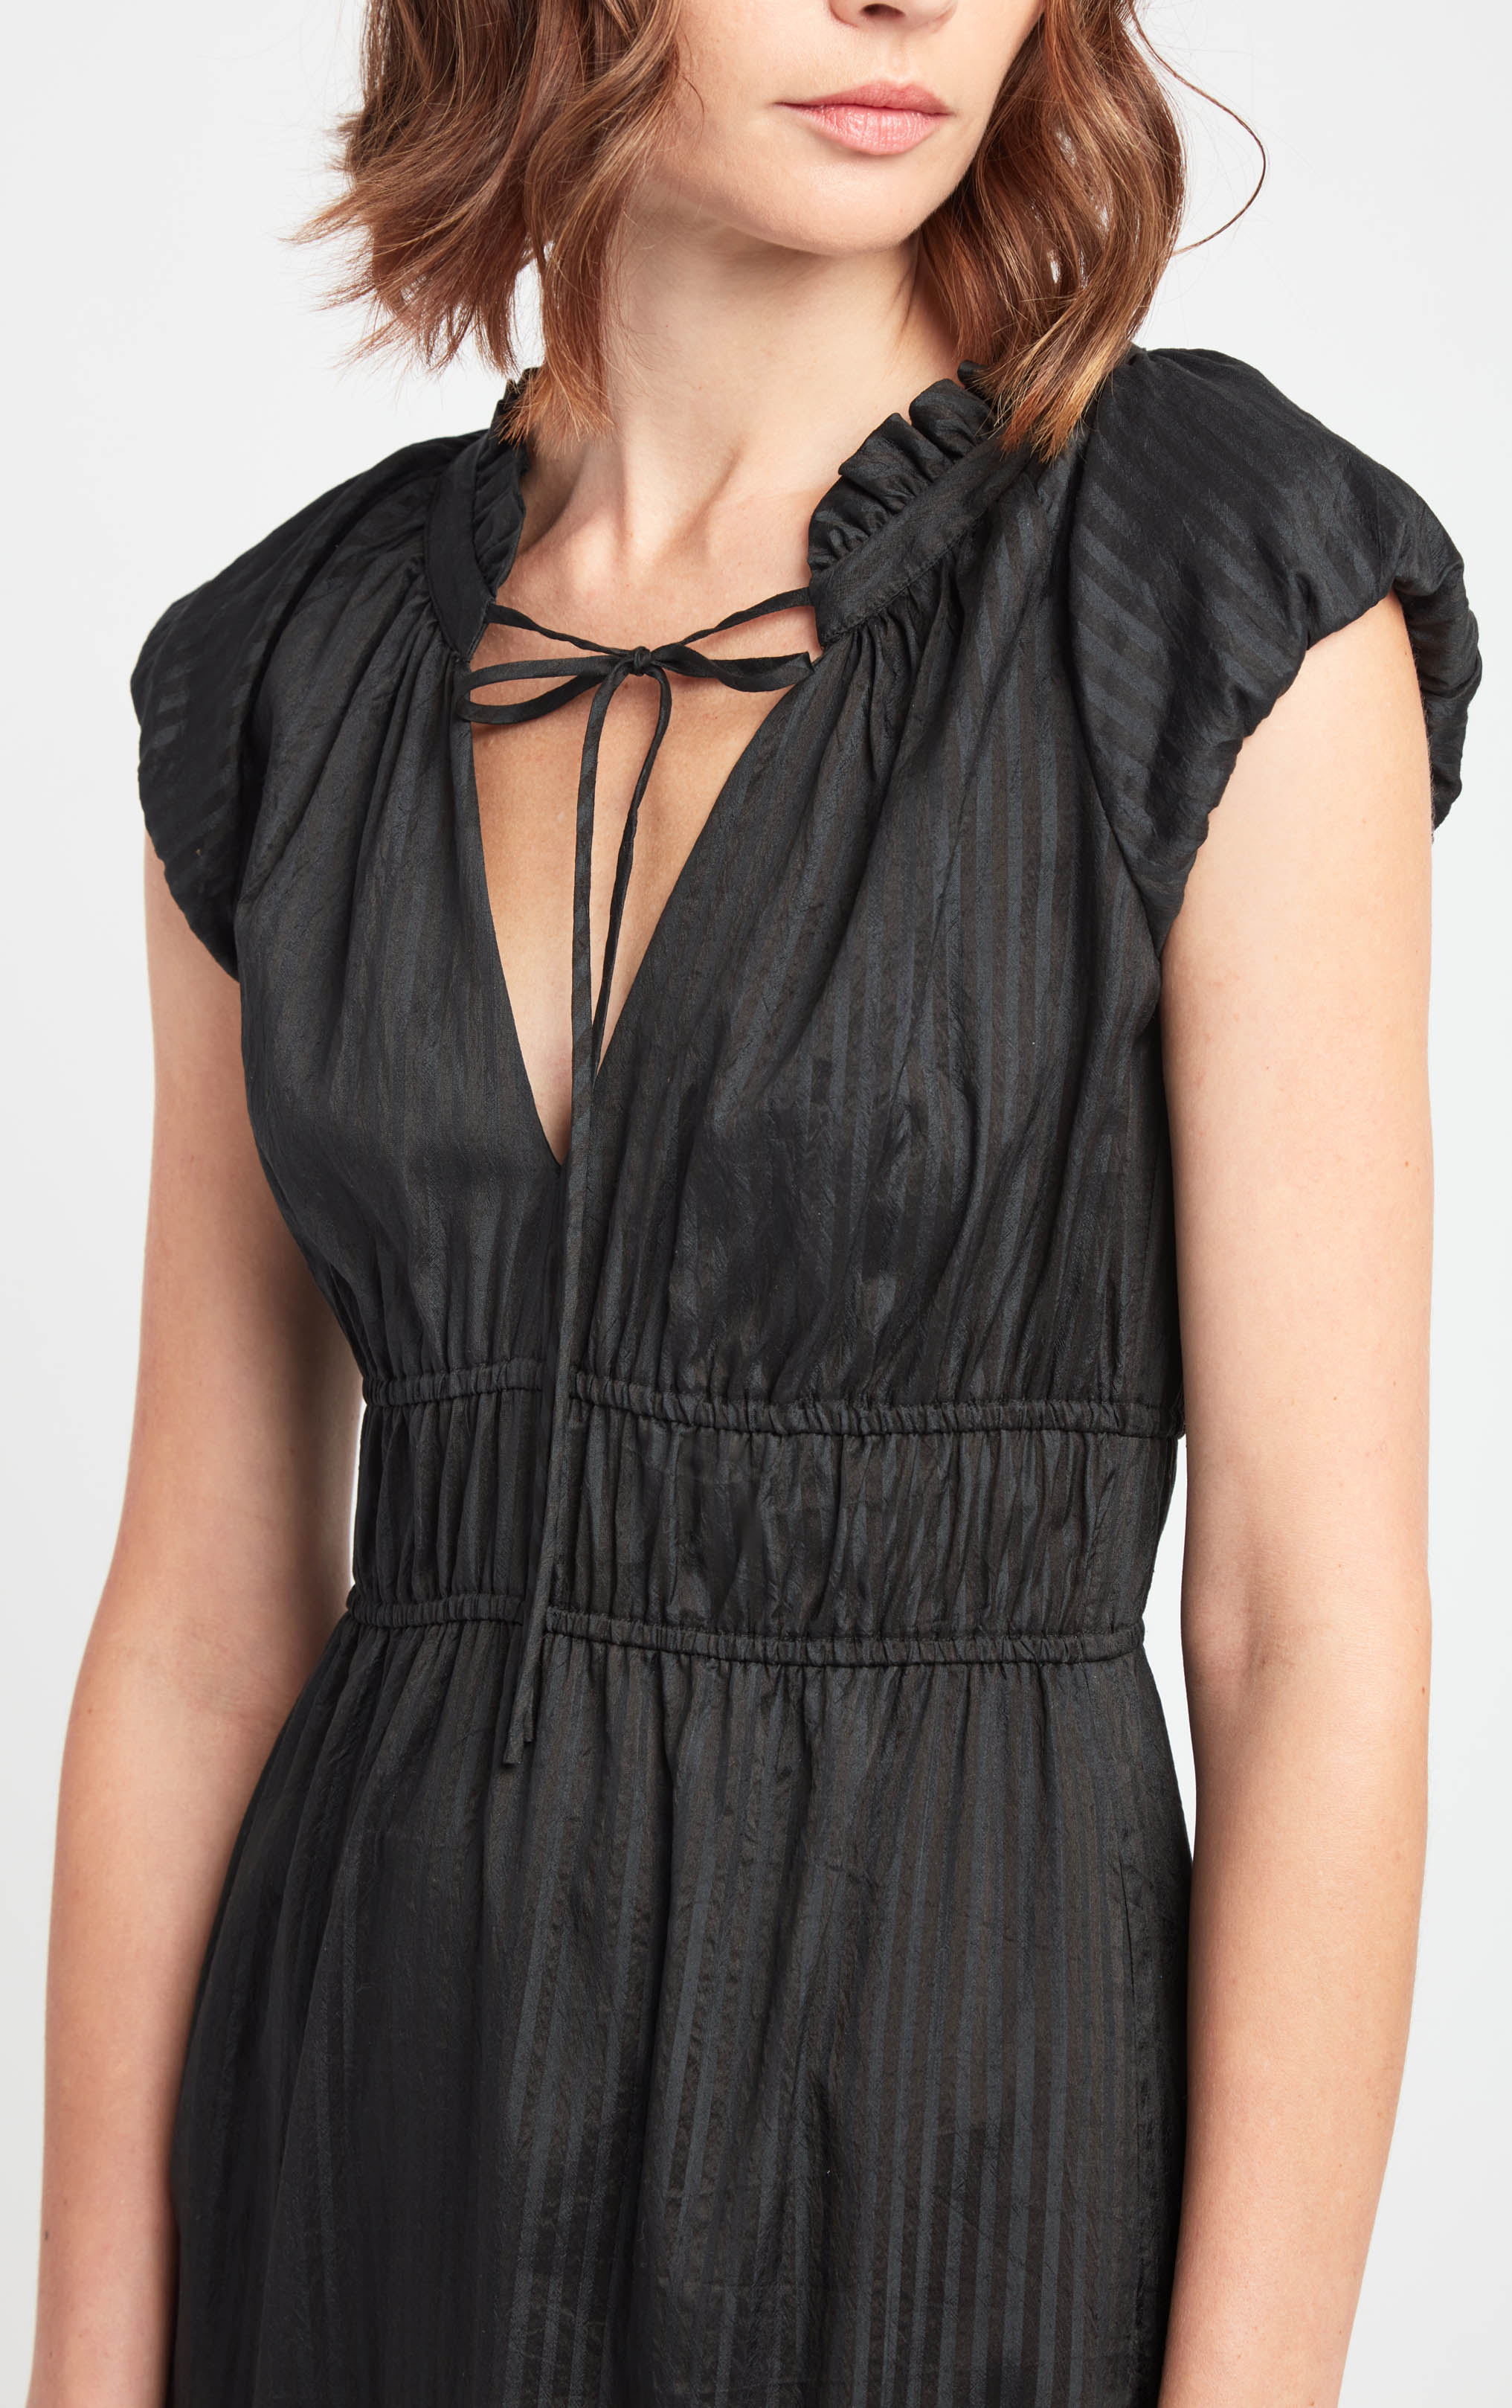 odette-dress-black-cotton-silk-blend-front-5